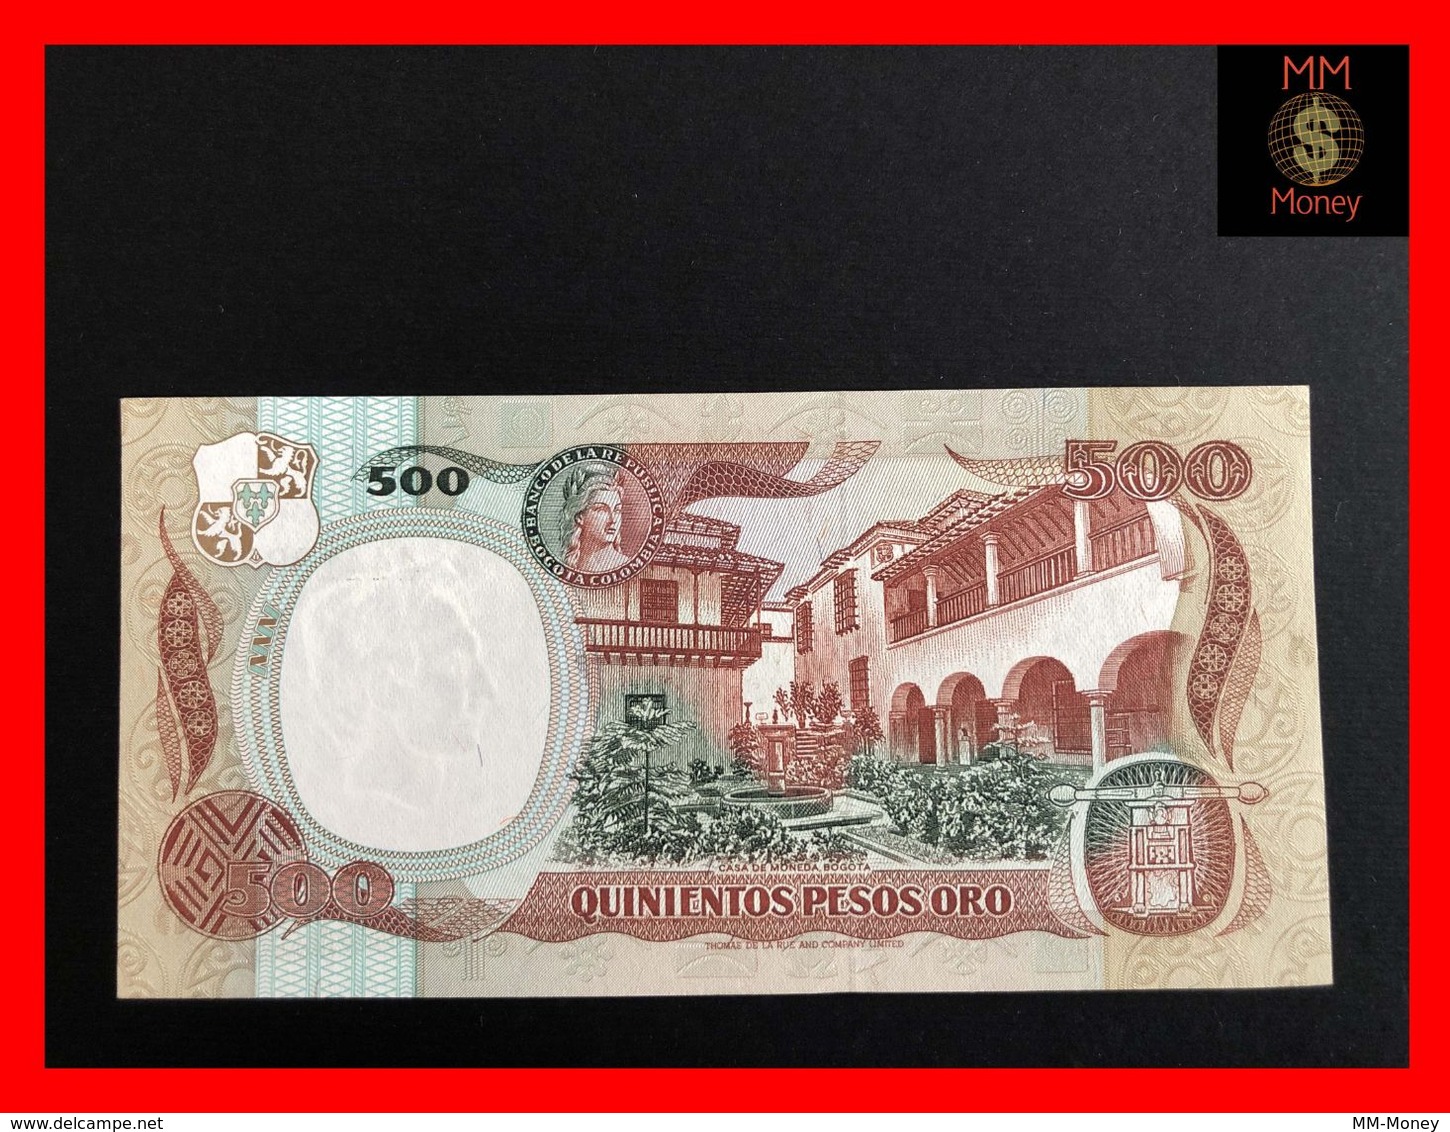 COLOMBIA 500 Pesos Oro 20.7.1984 P. 423 UNC - Colombia